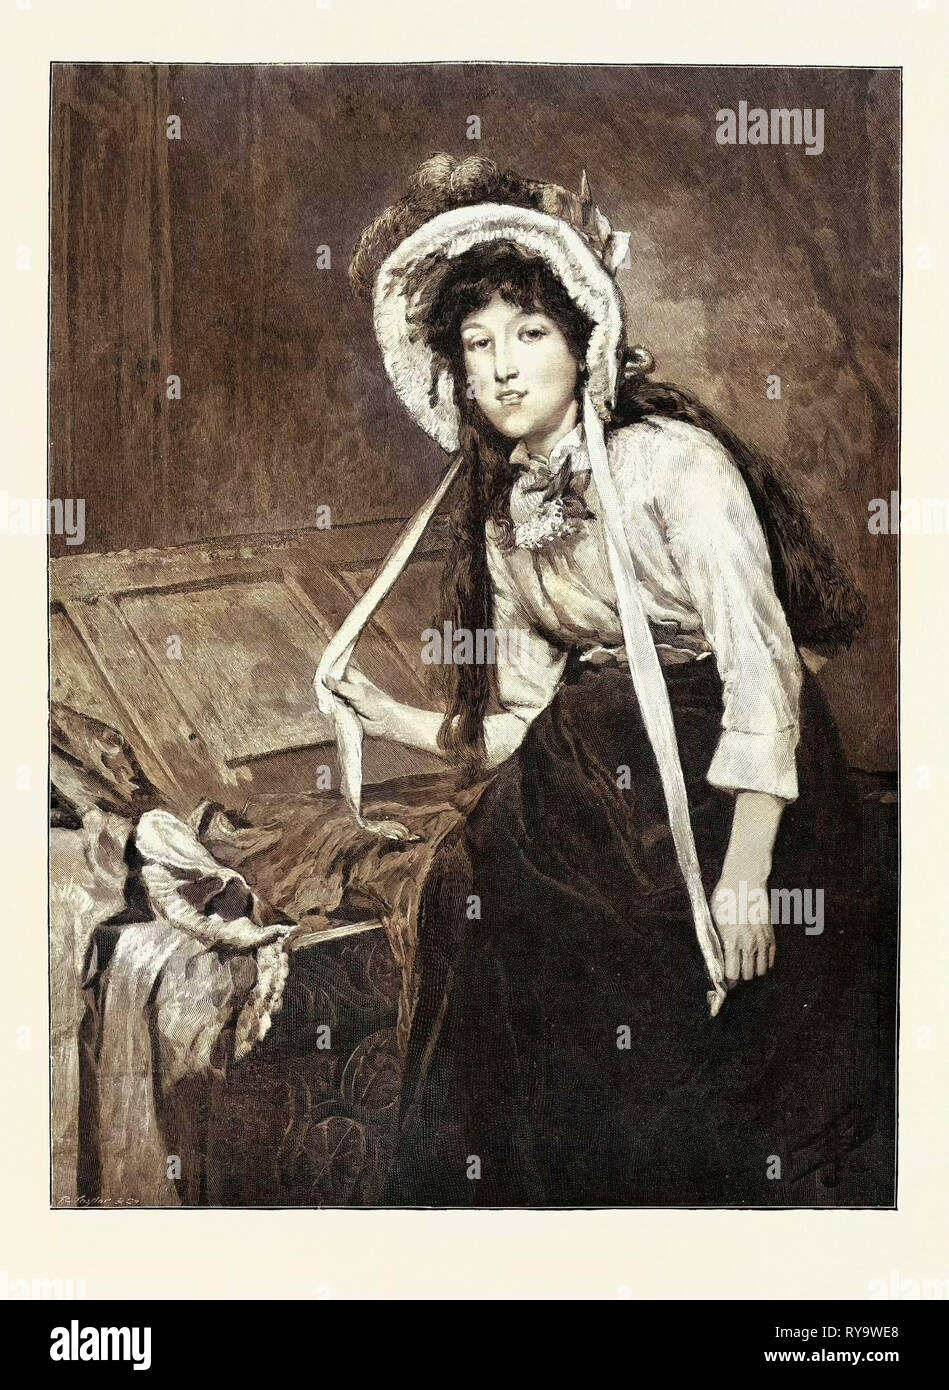 Pennacchi in prestito, incisione del 1893 Foto Stock